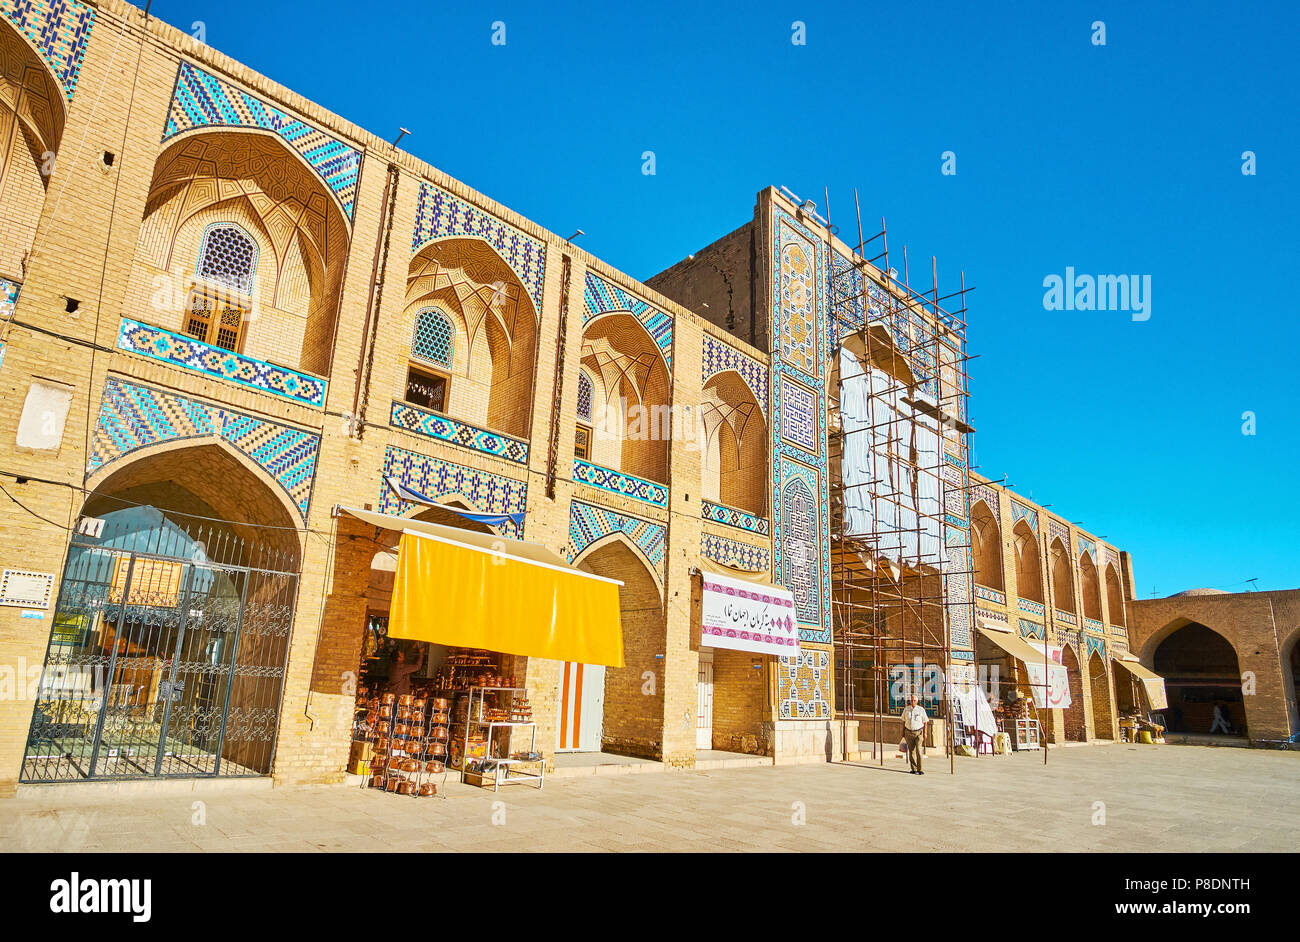 KERMAN, IRAN - 15 octobre 2017 : La façade de Ganjali Khan caravansérail avec des stands et des ateliers, sol carrelé iwan (portail) et niches voûtées traditiona - Banque D'Images